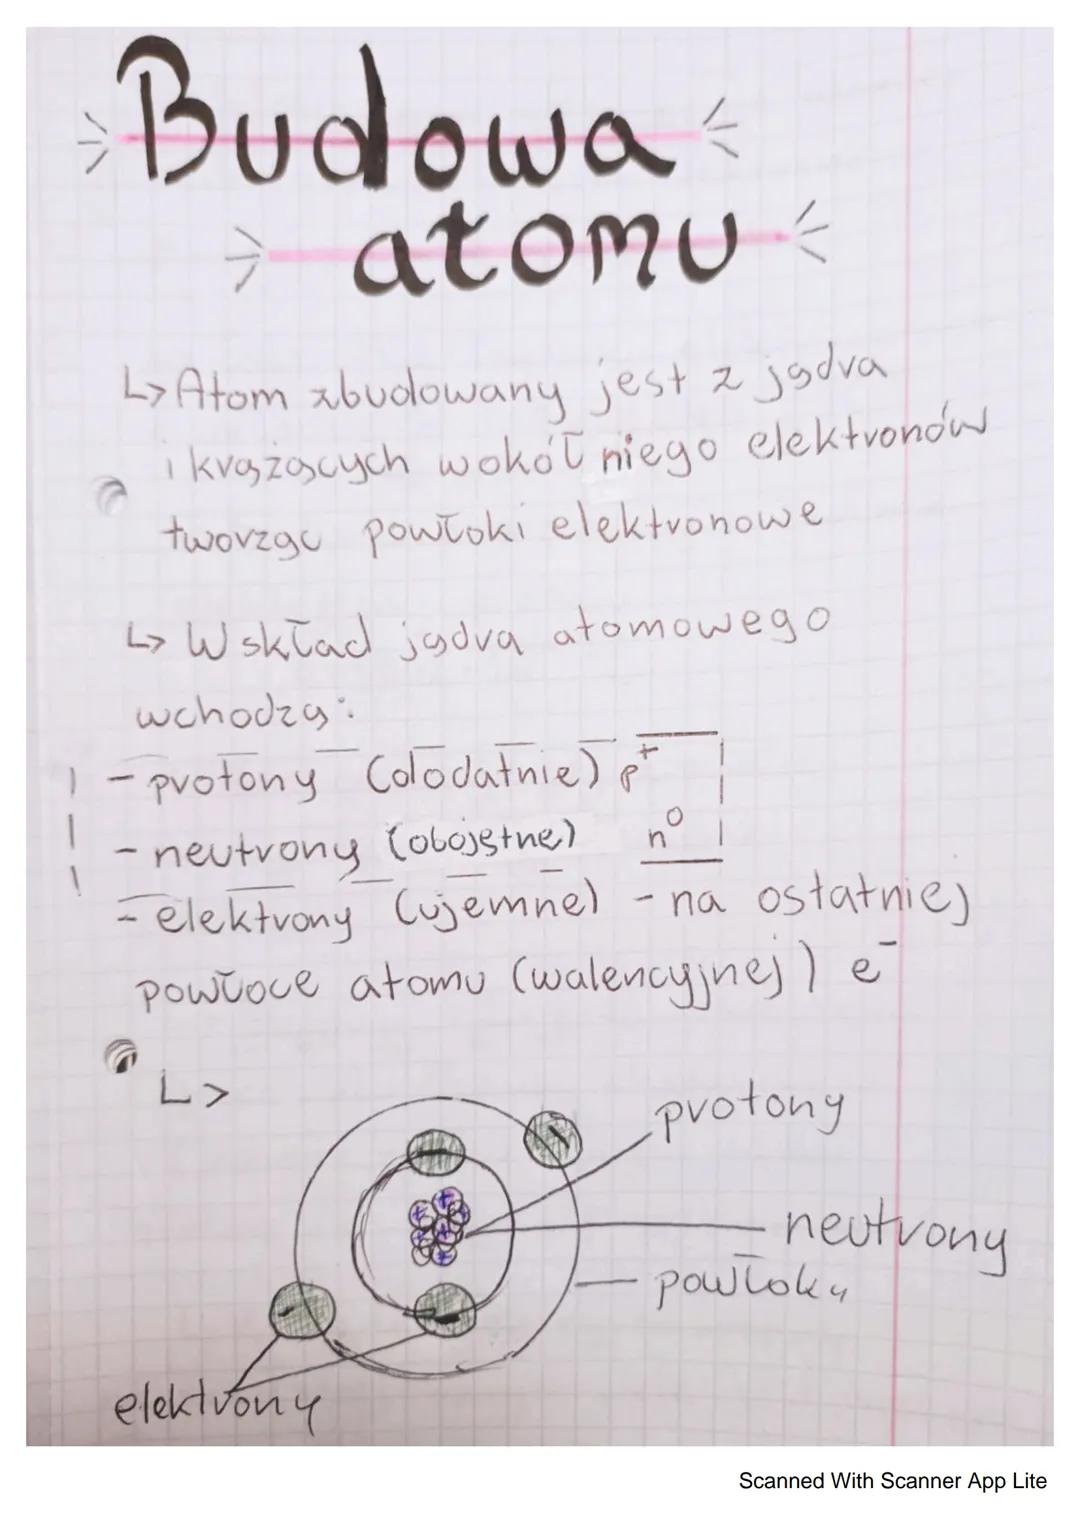 Budowa
L>Atom zbudowany jest z jadva
krążących wokół niego elektronów
tworzgo powłoki elektronowe
G
- atomu
↳> W skład jadva atomowego
wchod